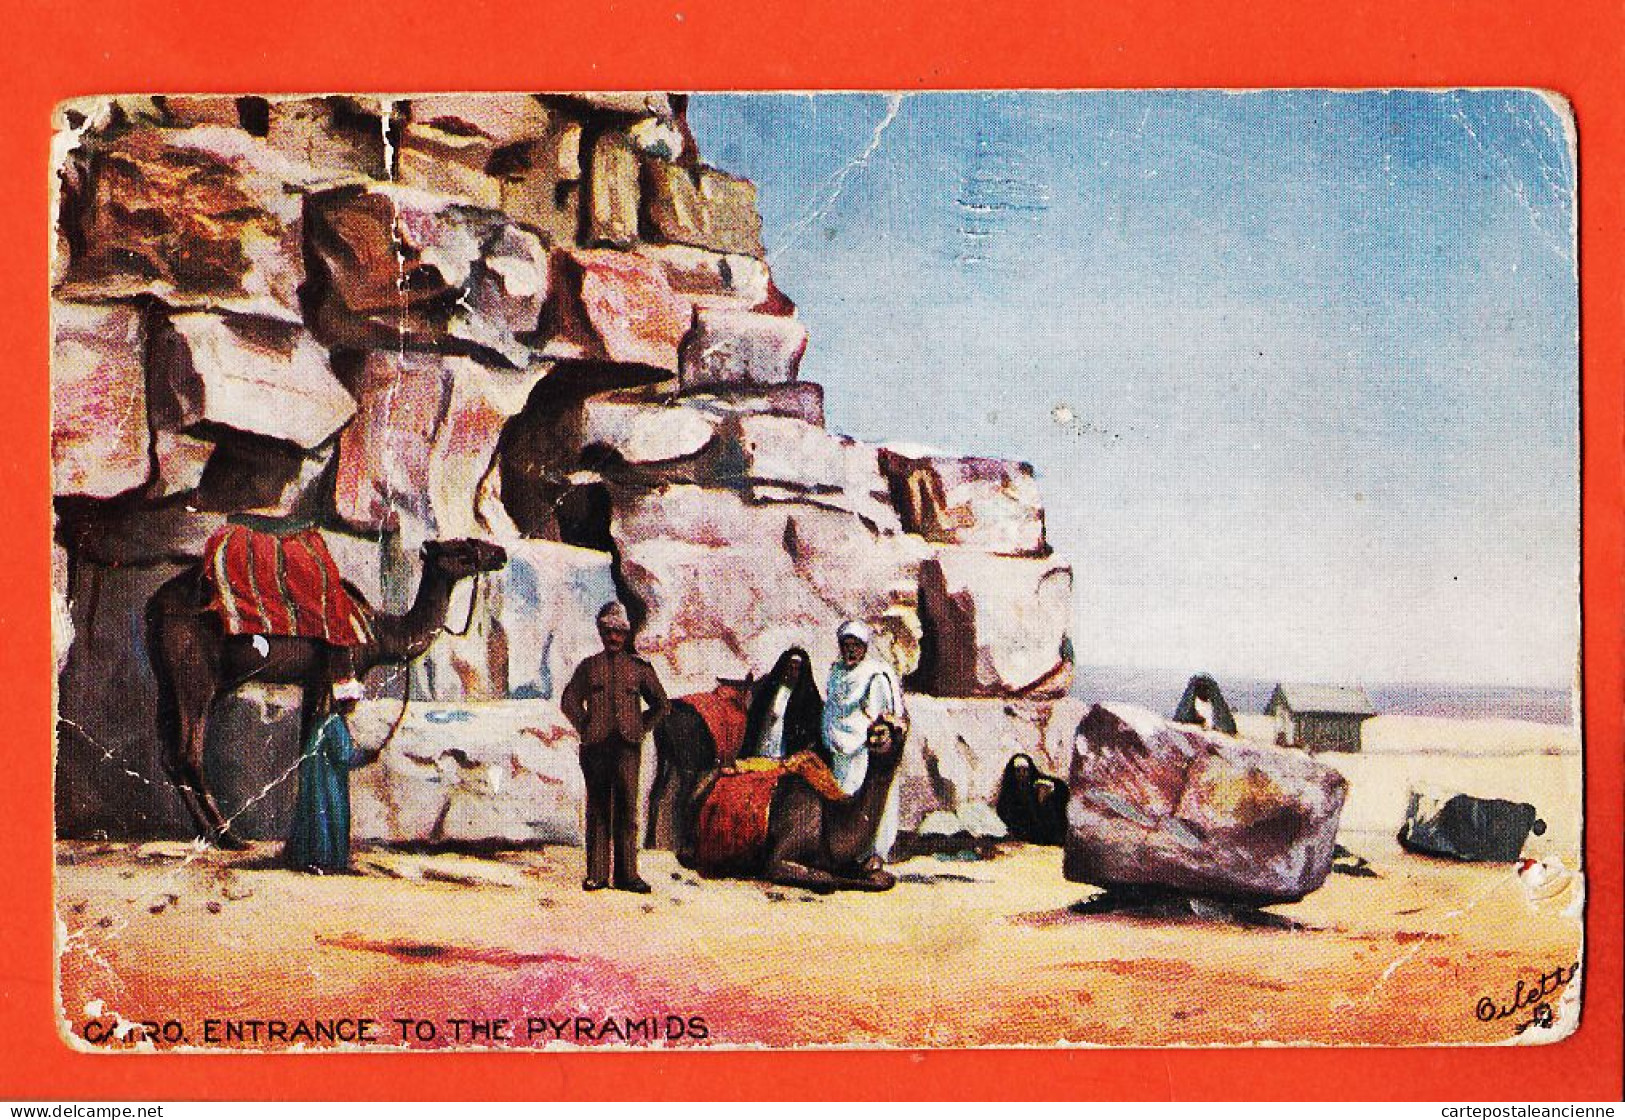 08045 ● CAIRO Entrance To The Pyramids Le CAIRE Entrée Pyramides 27-02-1911 à Suzanne LAMBA Raphael TUCK OILETTE - Pyramides